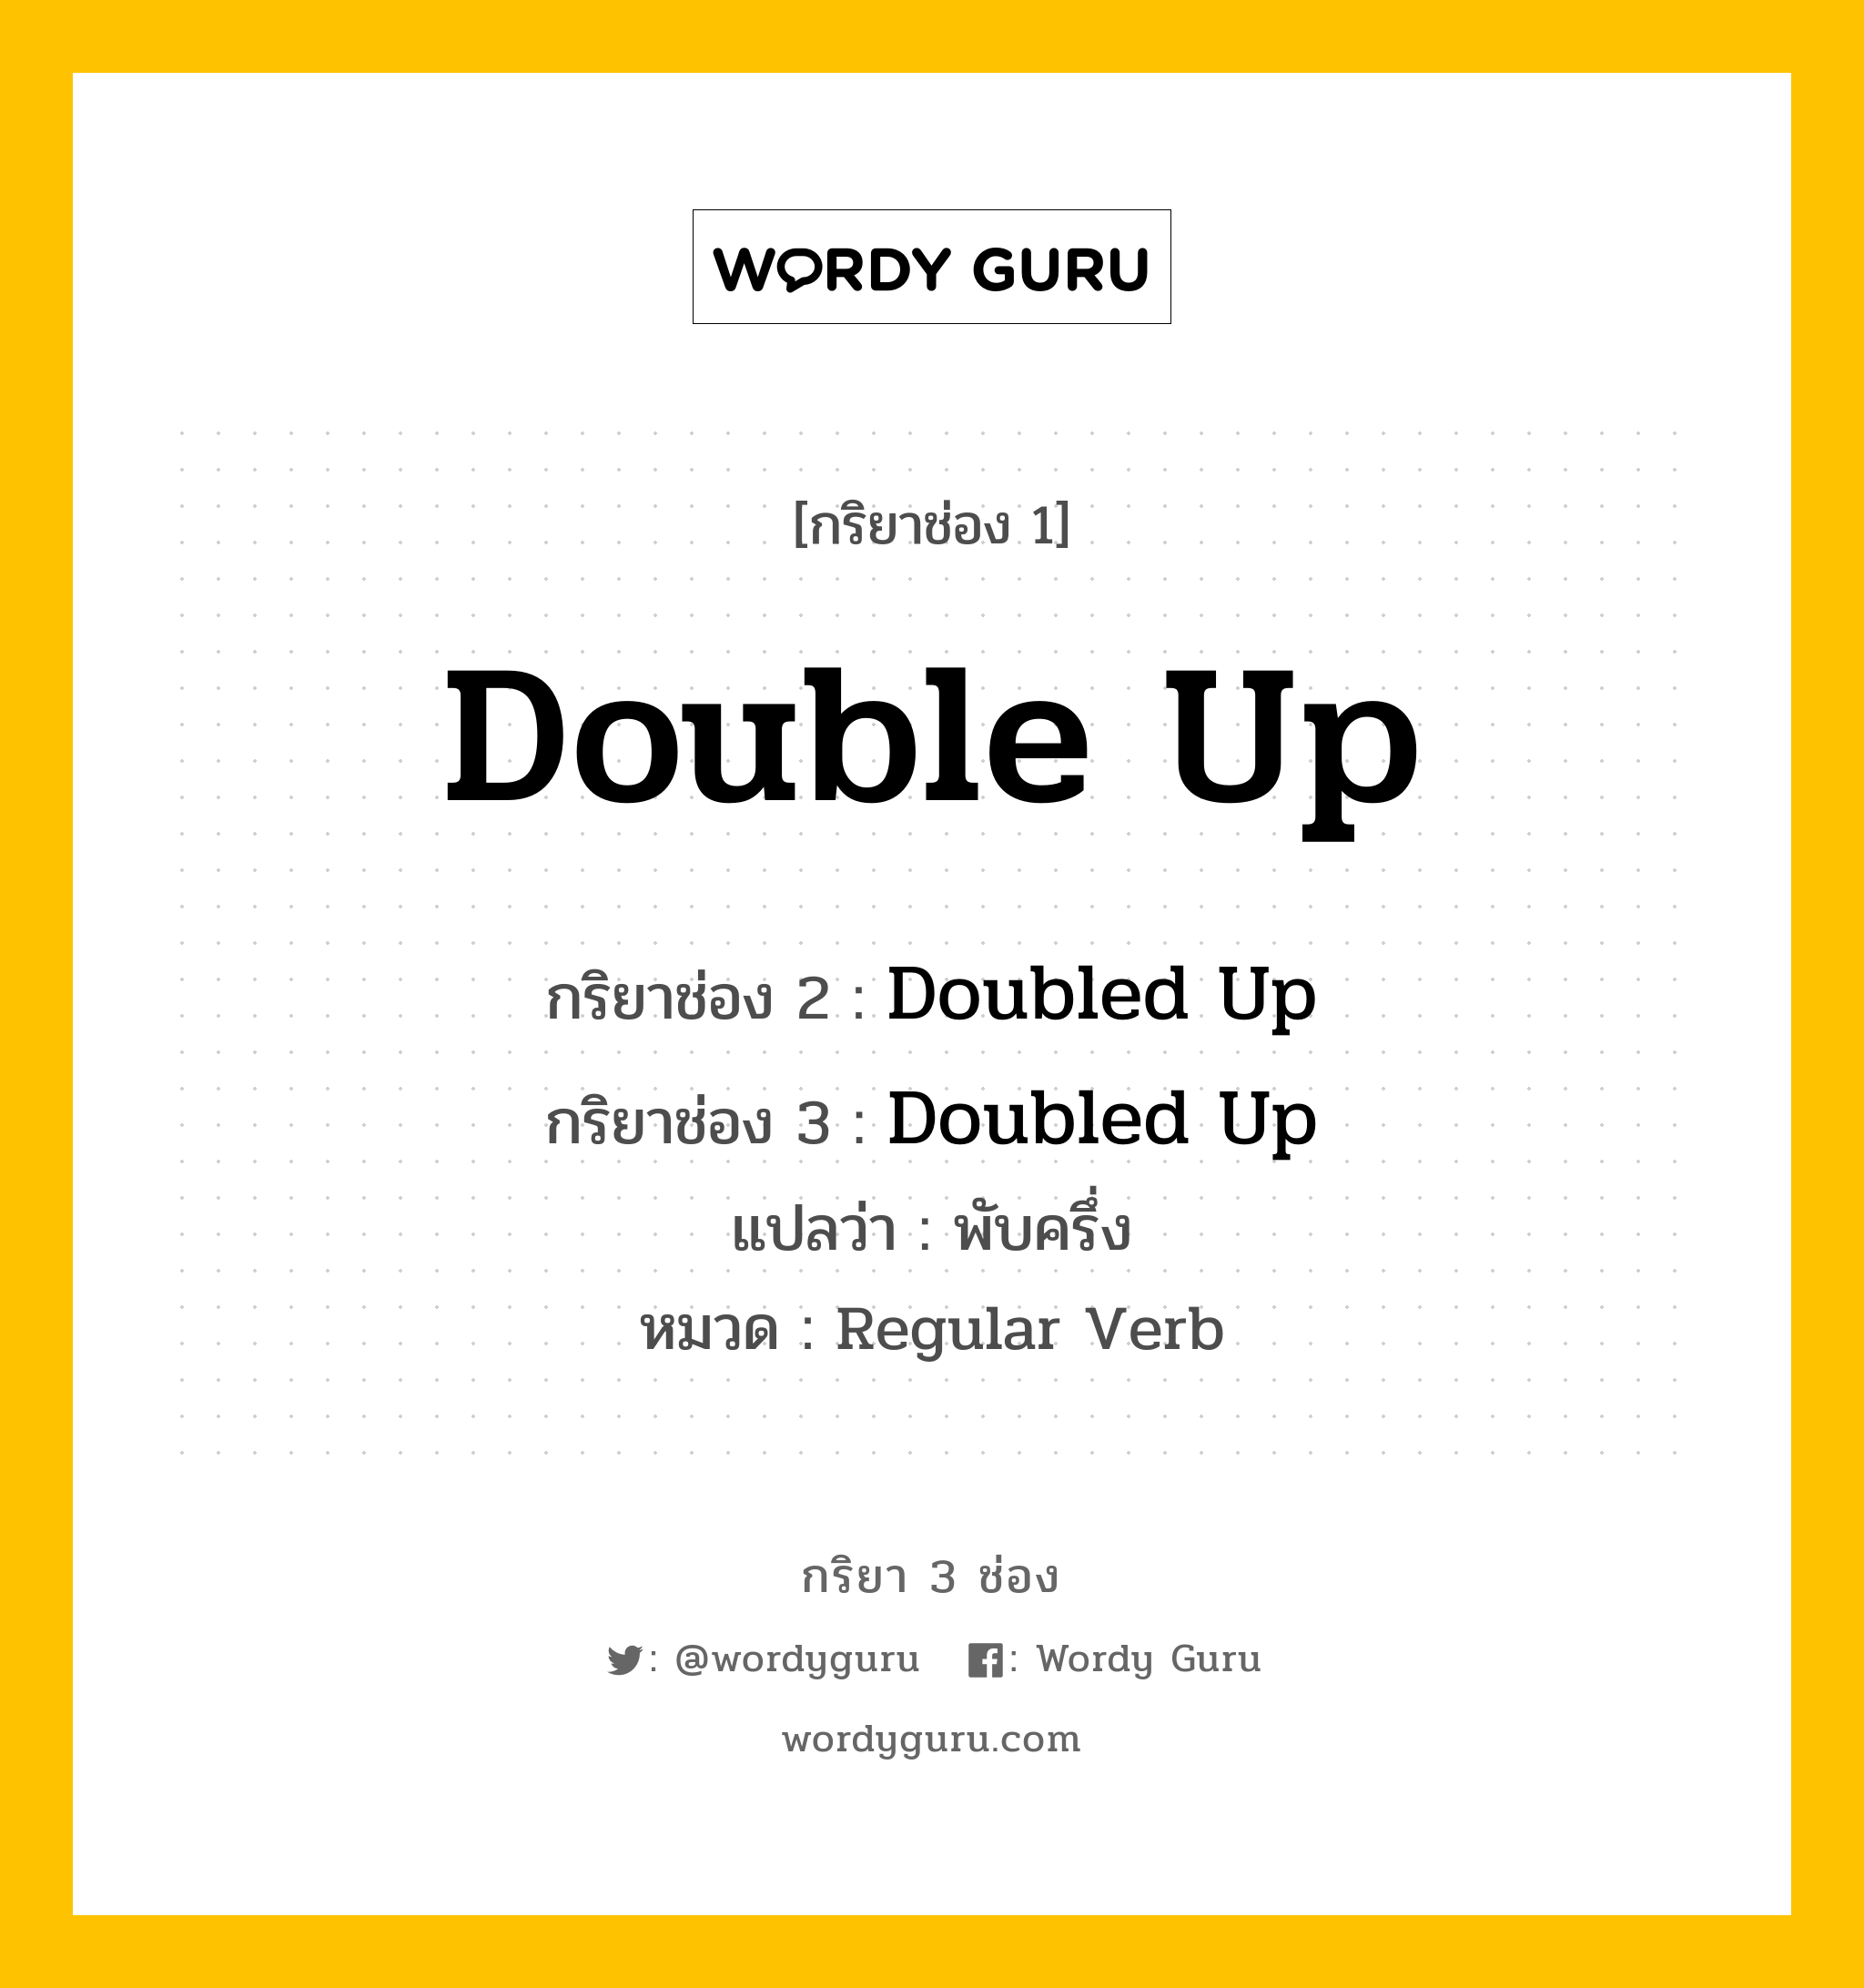 กริยา 3 ช่อง: Double Up ช่อง 2 Double Up ช่อง 3 คืออะไร, กริยาช่อง 1 Double Up กริยาช่อง 2 Doubled Up กริยาช่อง 3 Doubled Up แปลว่า พับครึ่ง หมวด Regular Verb หมวด Regular Verb